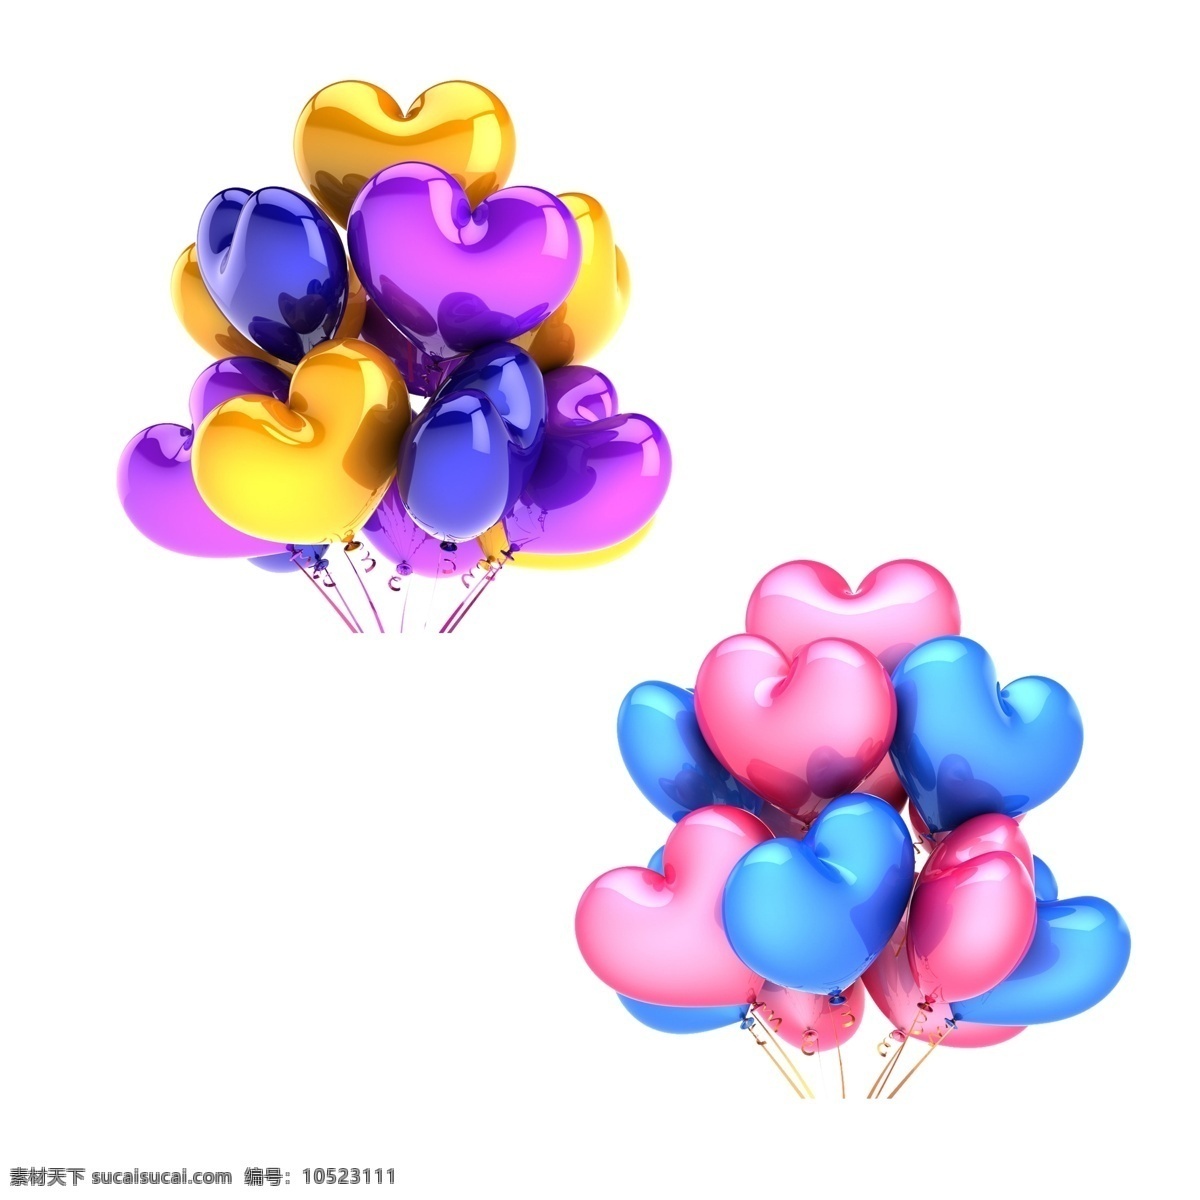 心形气球 心 桃心 爱情 节日彩球 气球 彩球 节日素材 节日庆祝 3d设计 彩色气球 分层 源文件